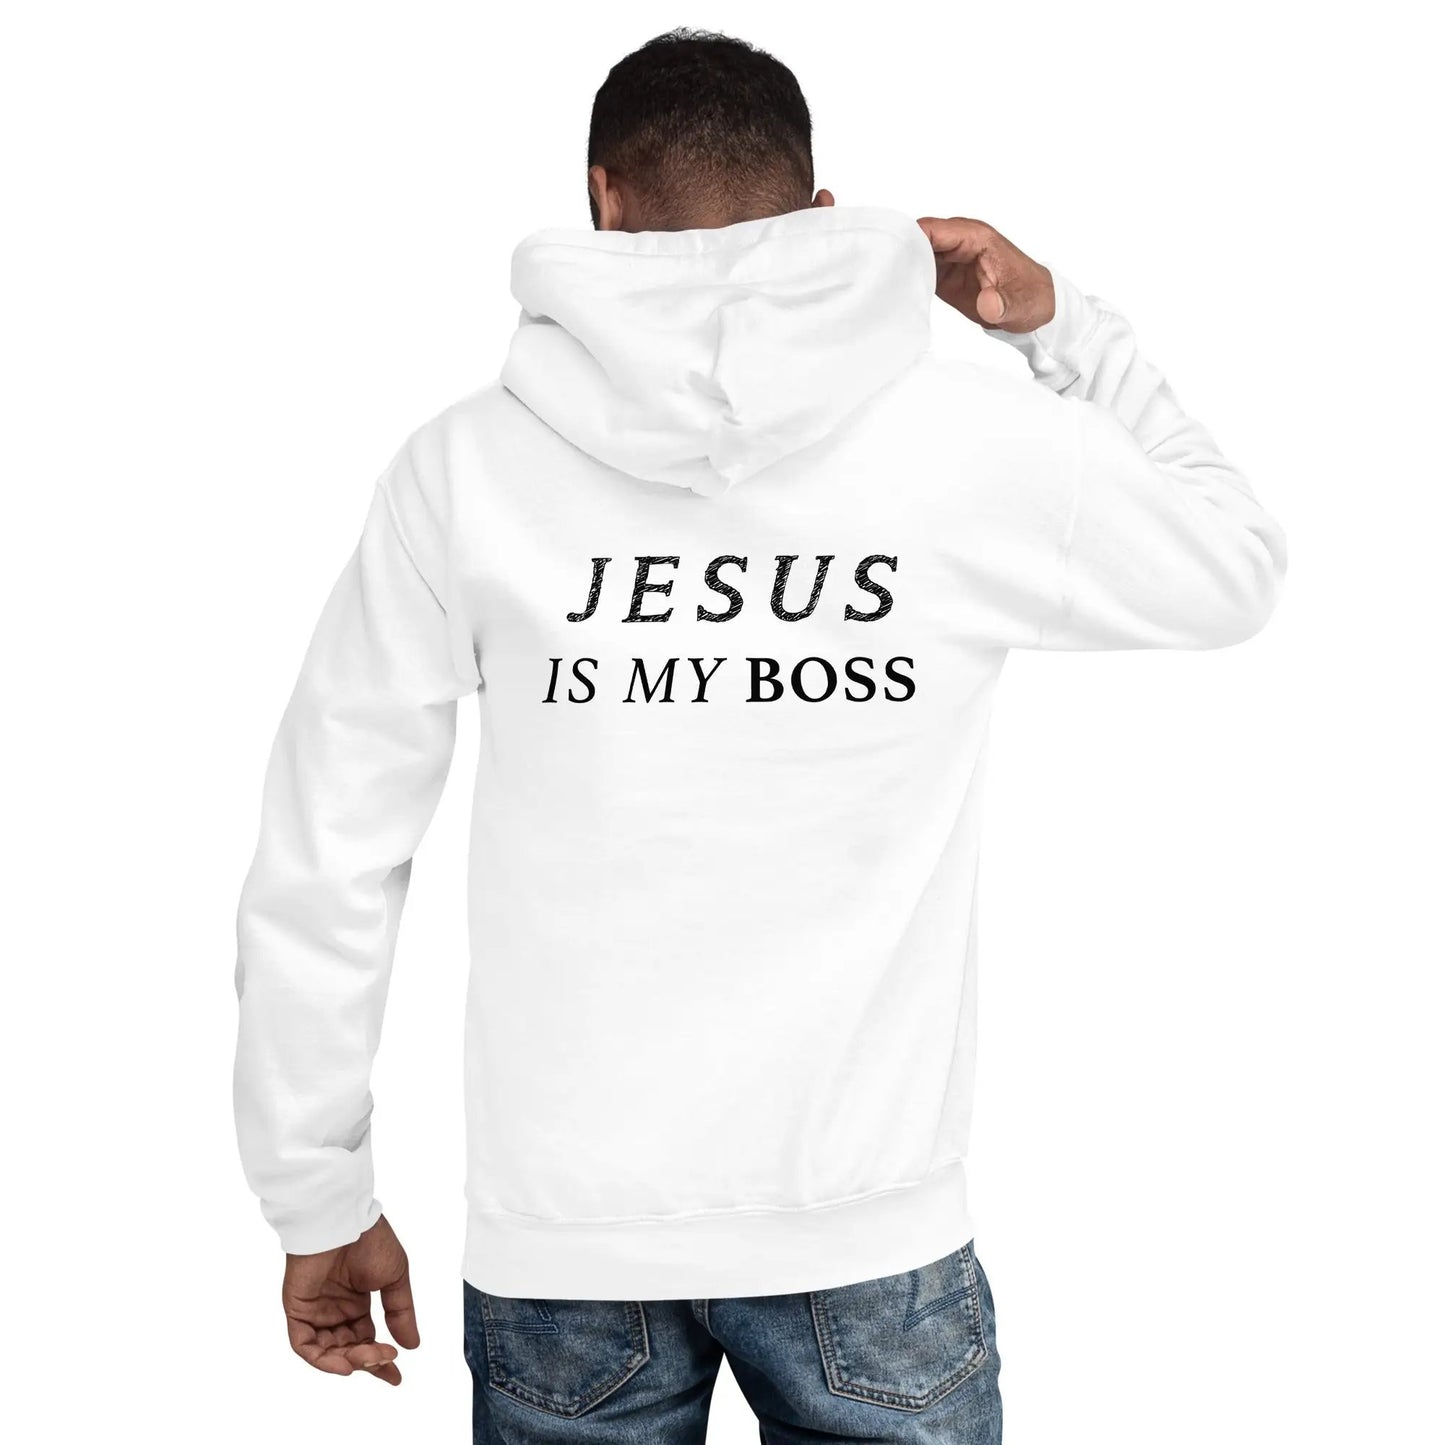 Hoodie mit dem Aufdruck "JESUS IS MY BOSS"